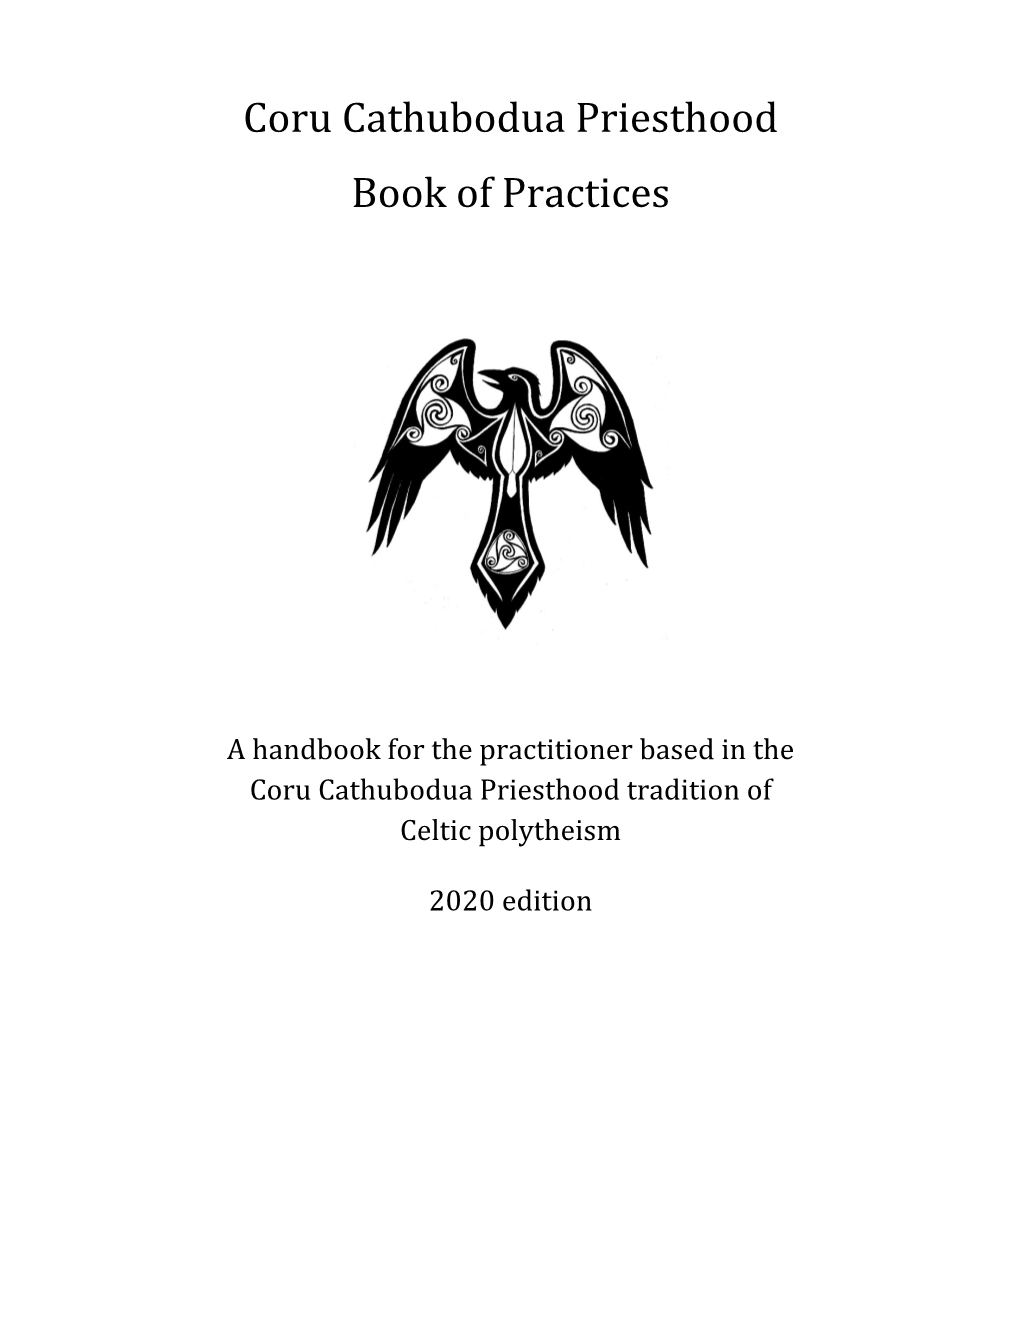 Coru Cathubodua Priesthood Book of Practices